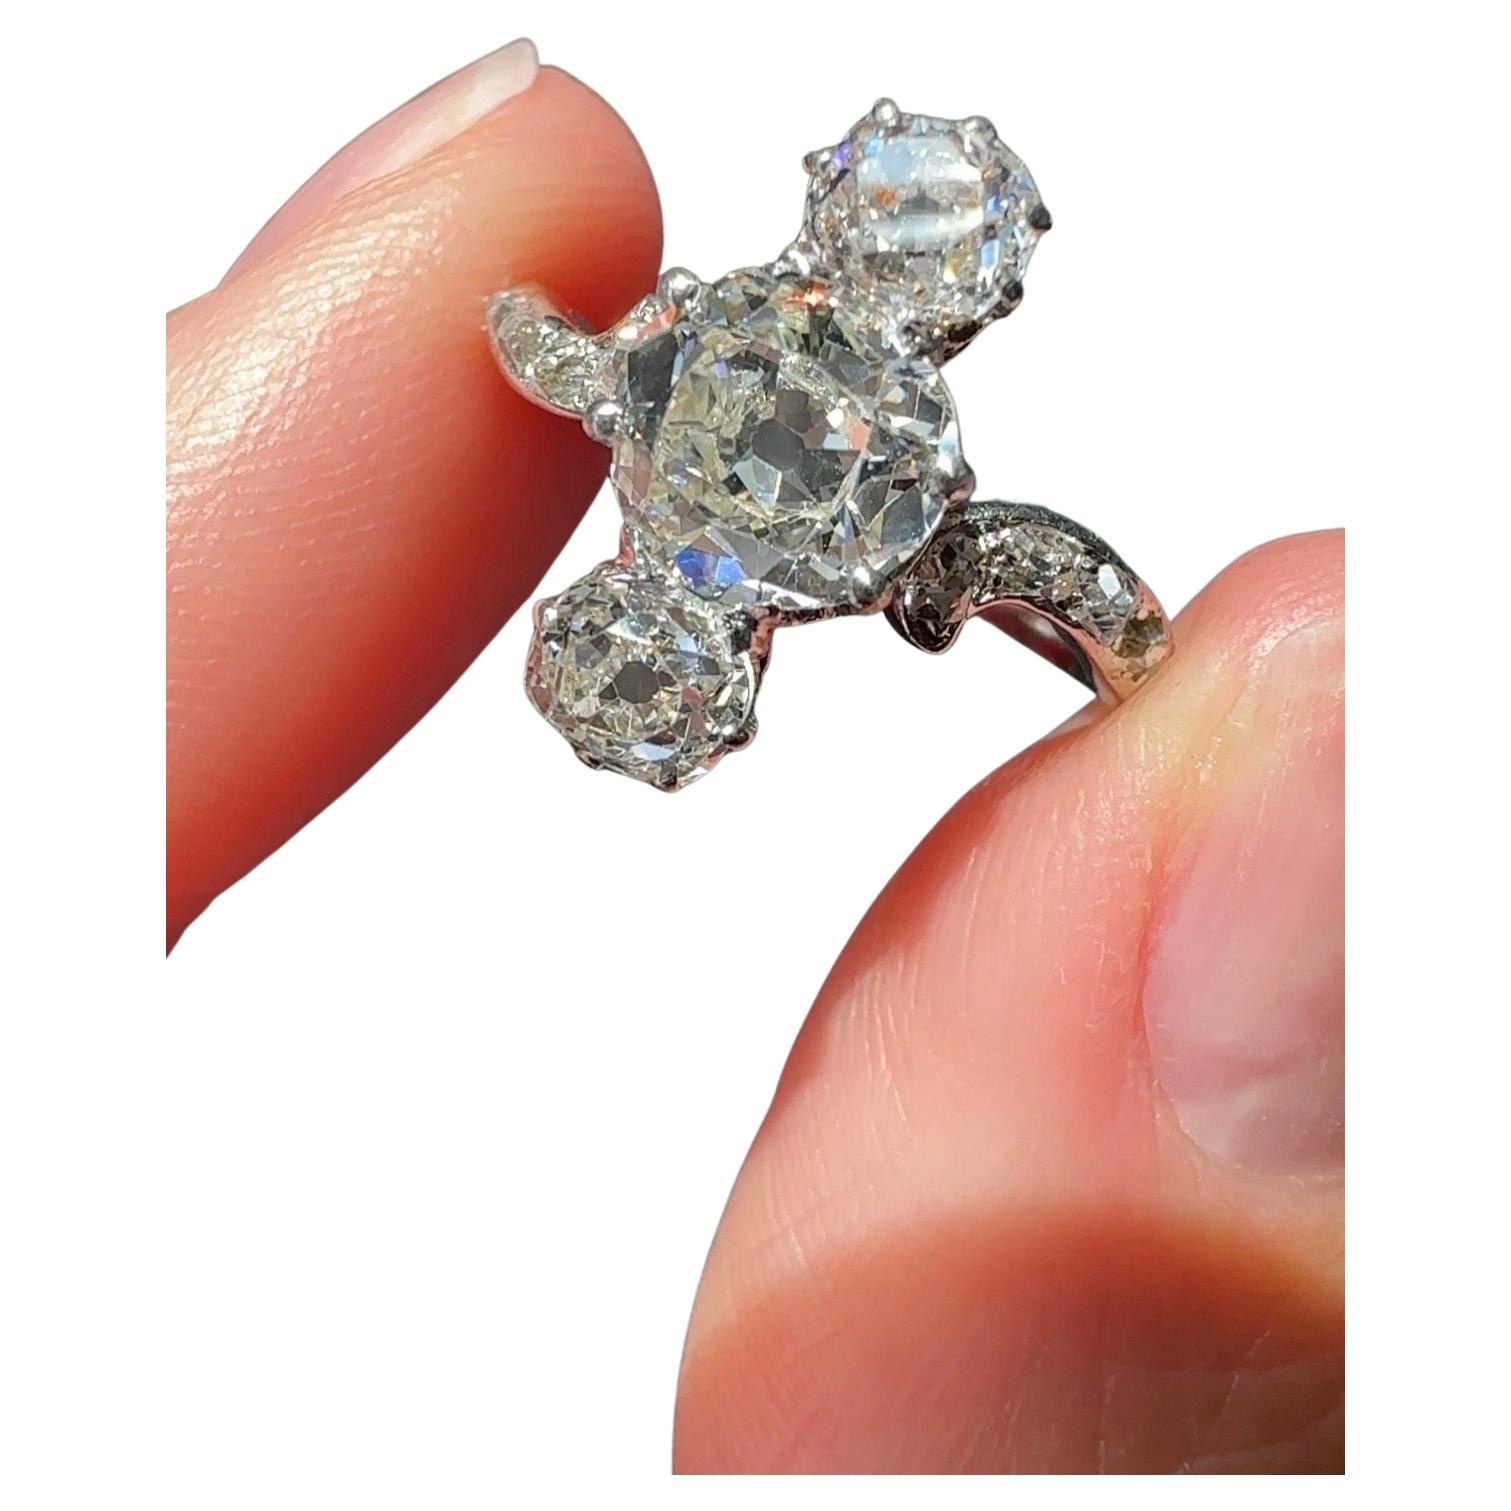 Dreisteiniger edwardianischer Diamantring